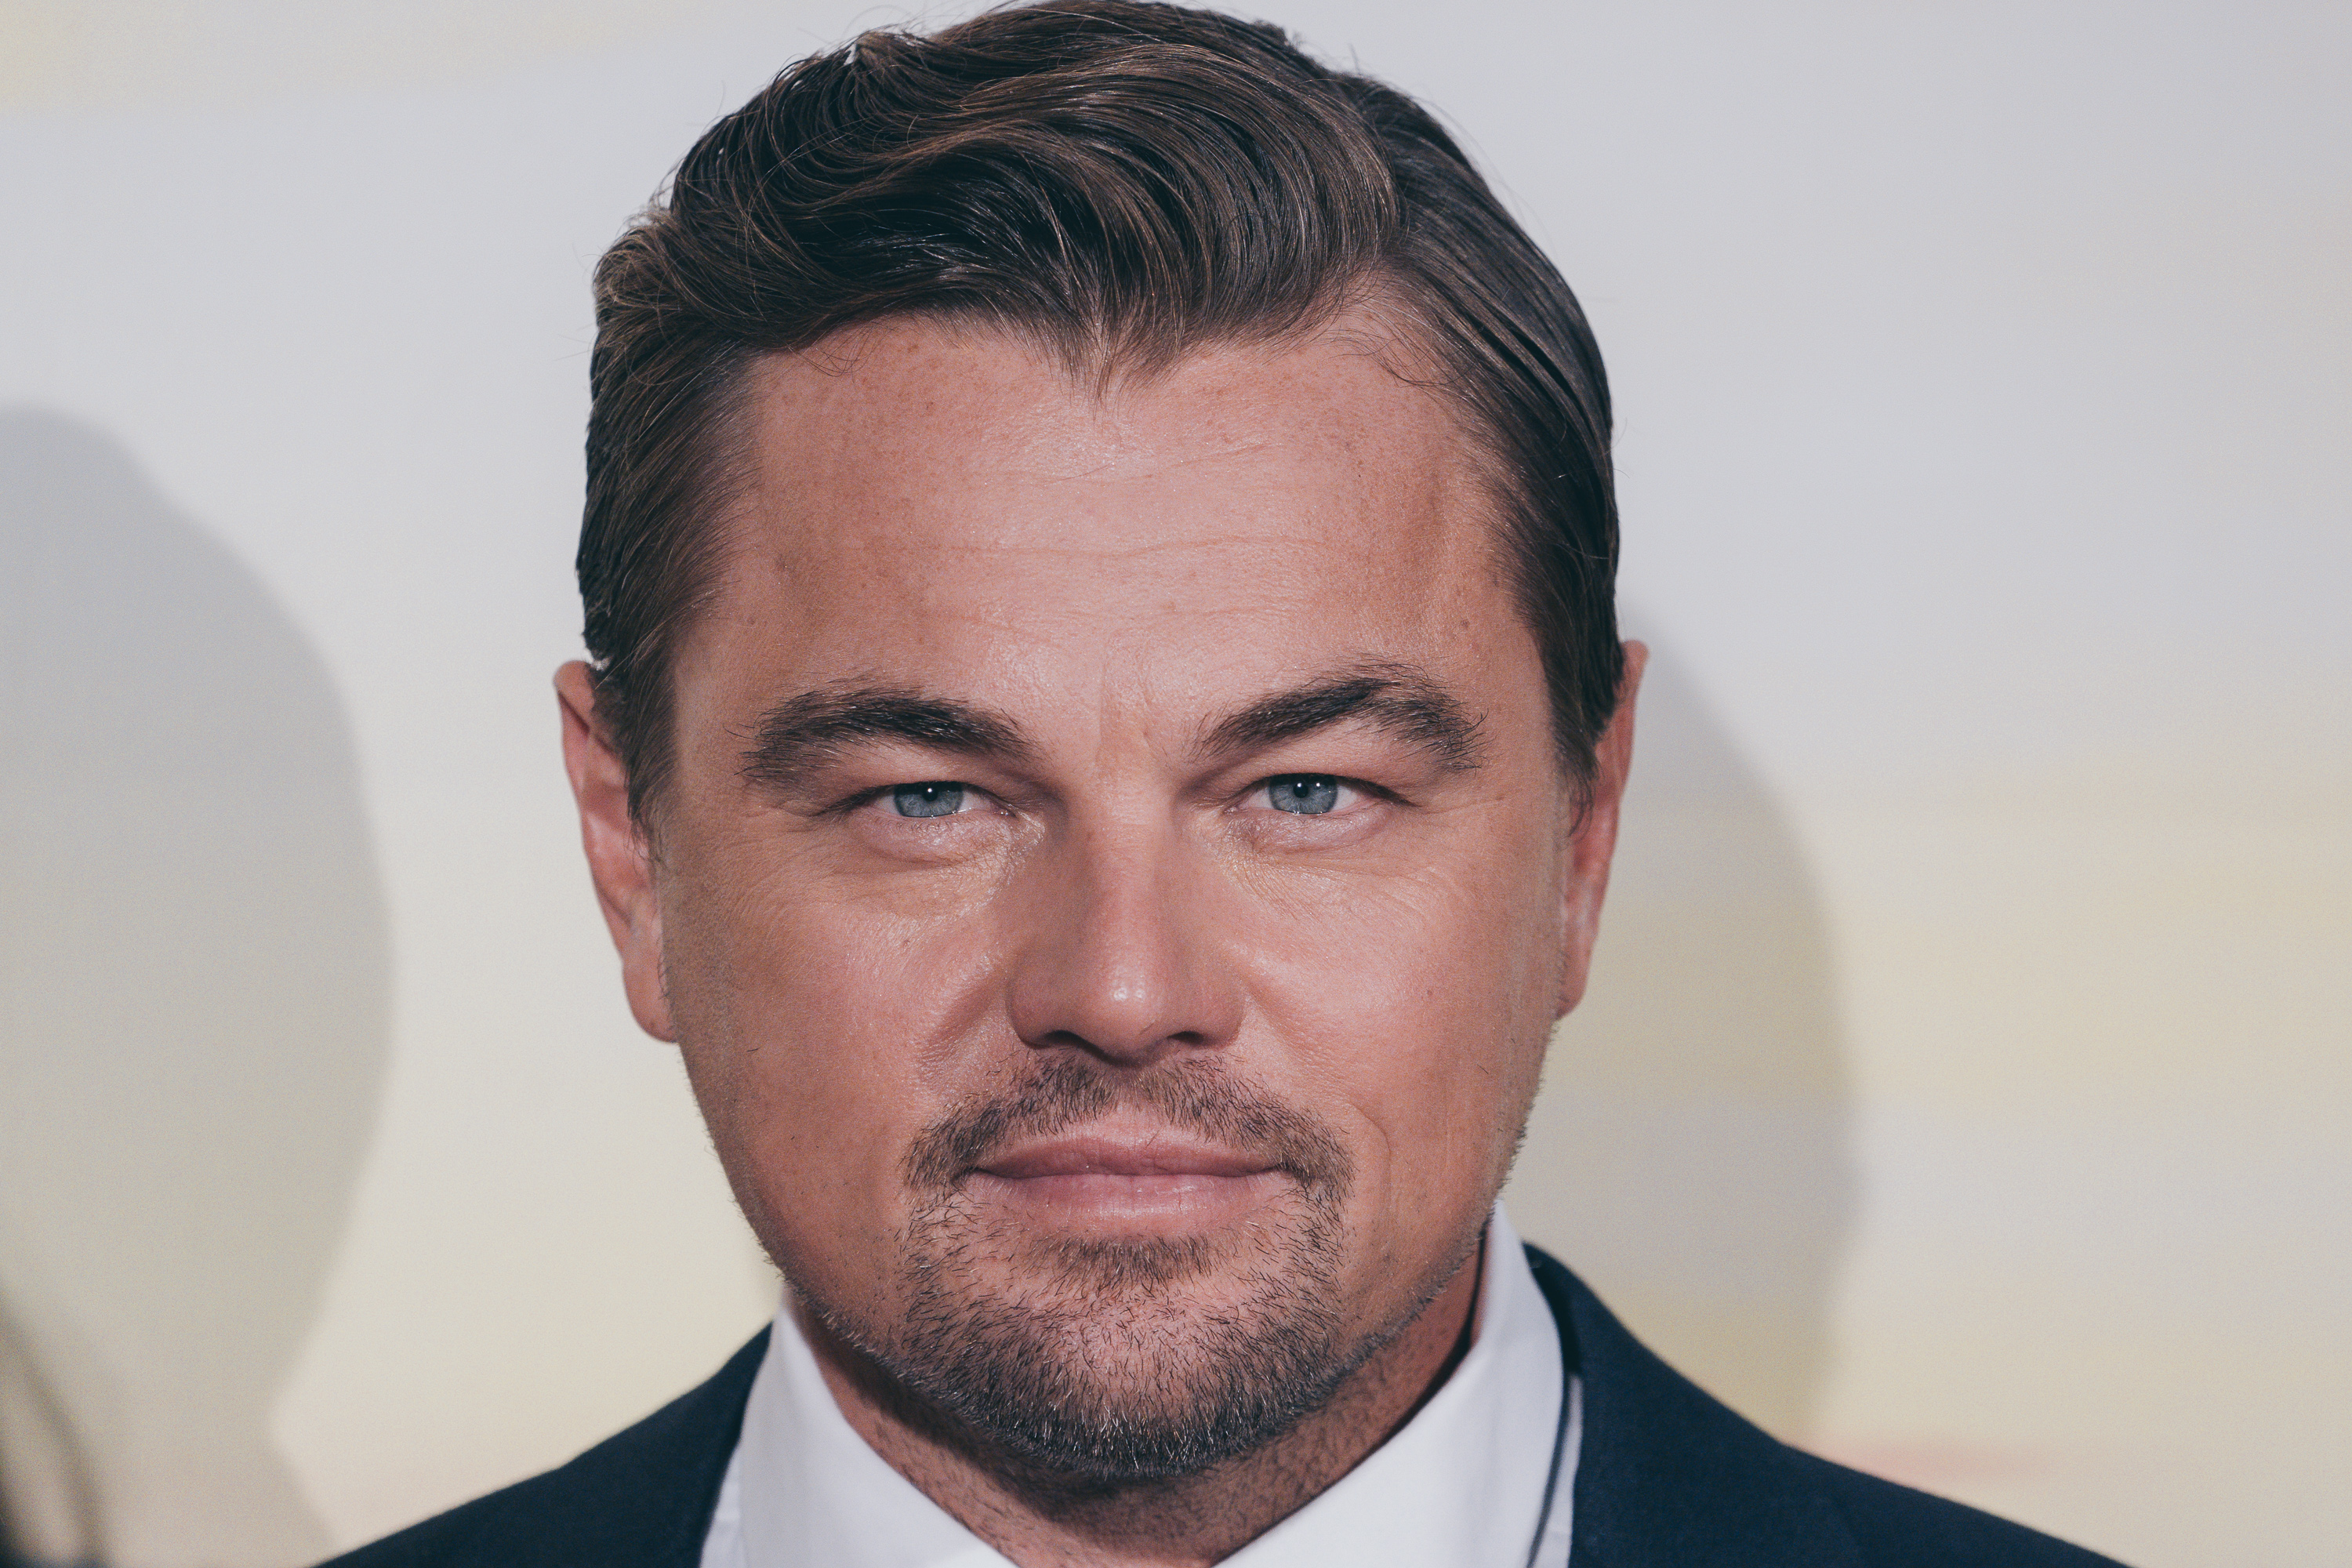 Leonardo DiCaprio assiste à la première de "Il était une fois à Hollywood" le 2 août 2019 à Rome, en Italie | Source : Getty Images